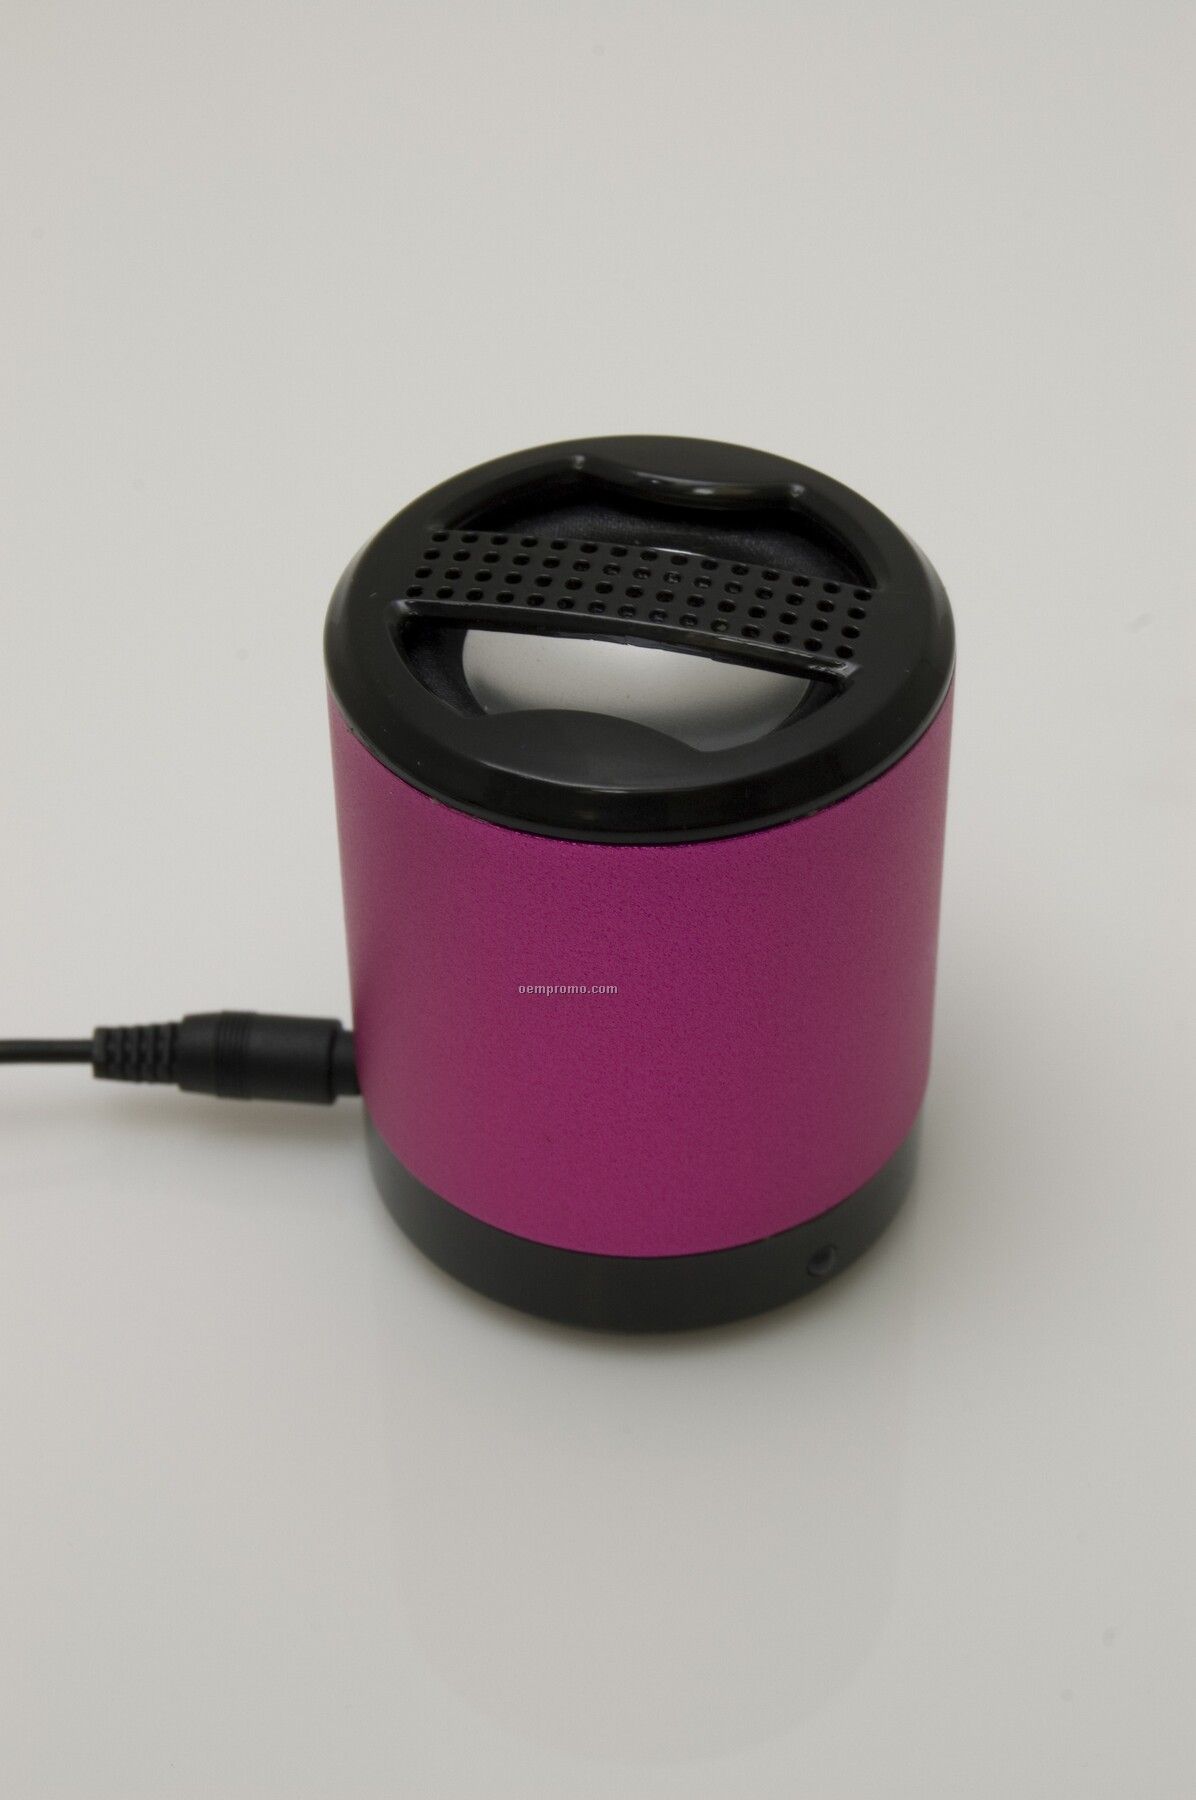 The Tube Portable Speaker